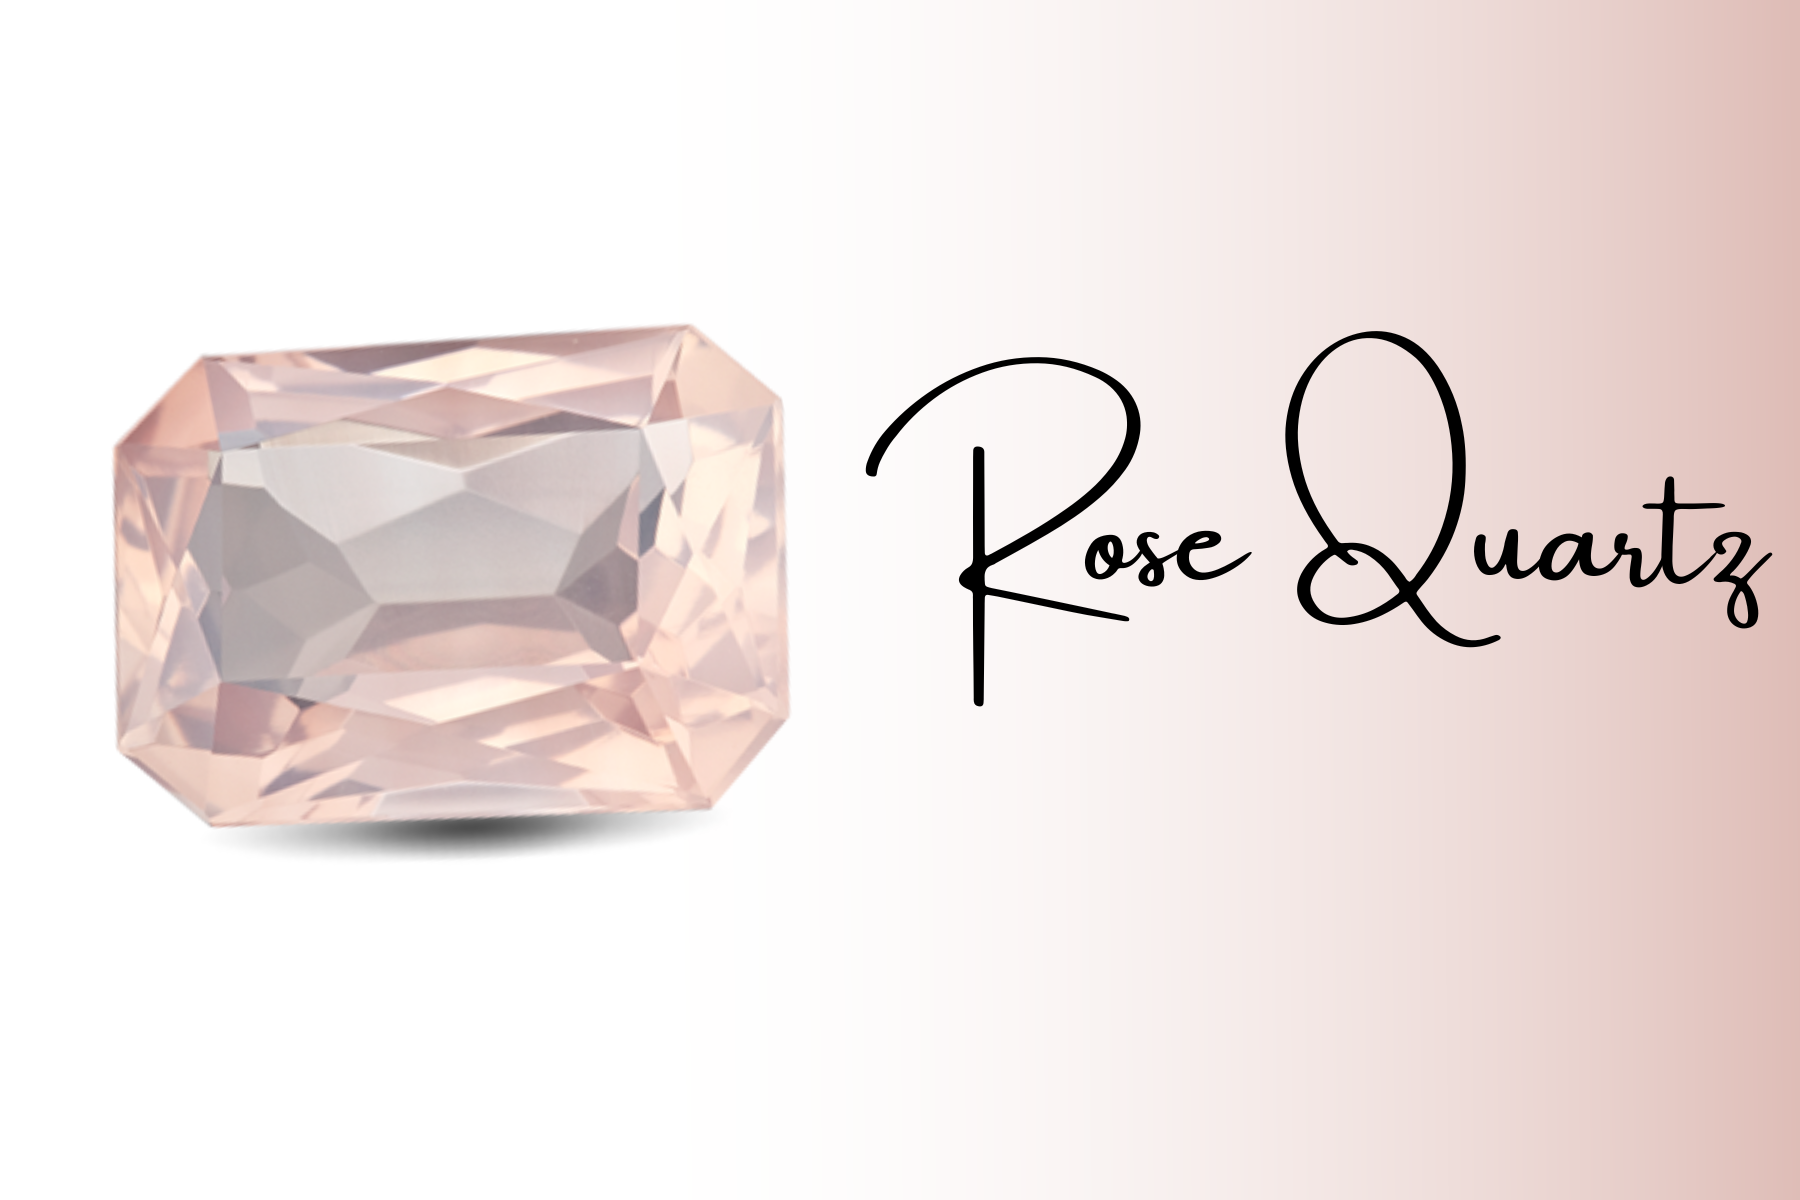 An octagonal pink rose quartz